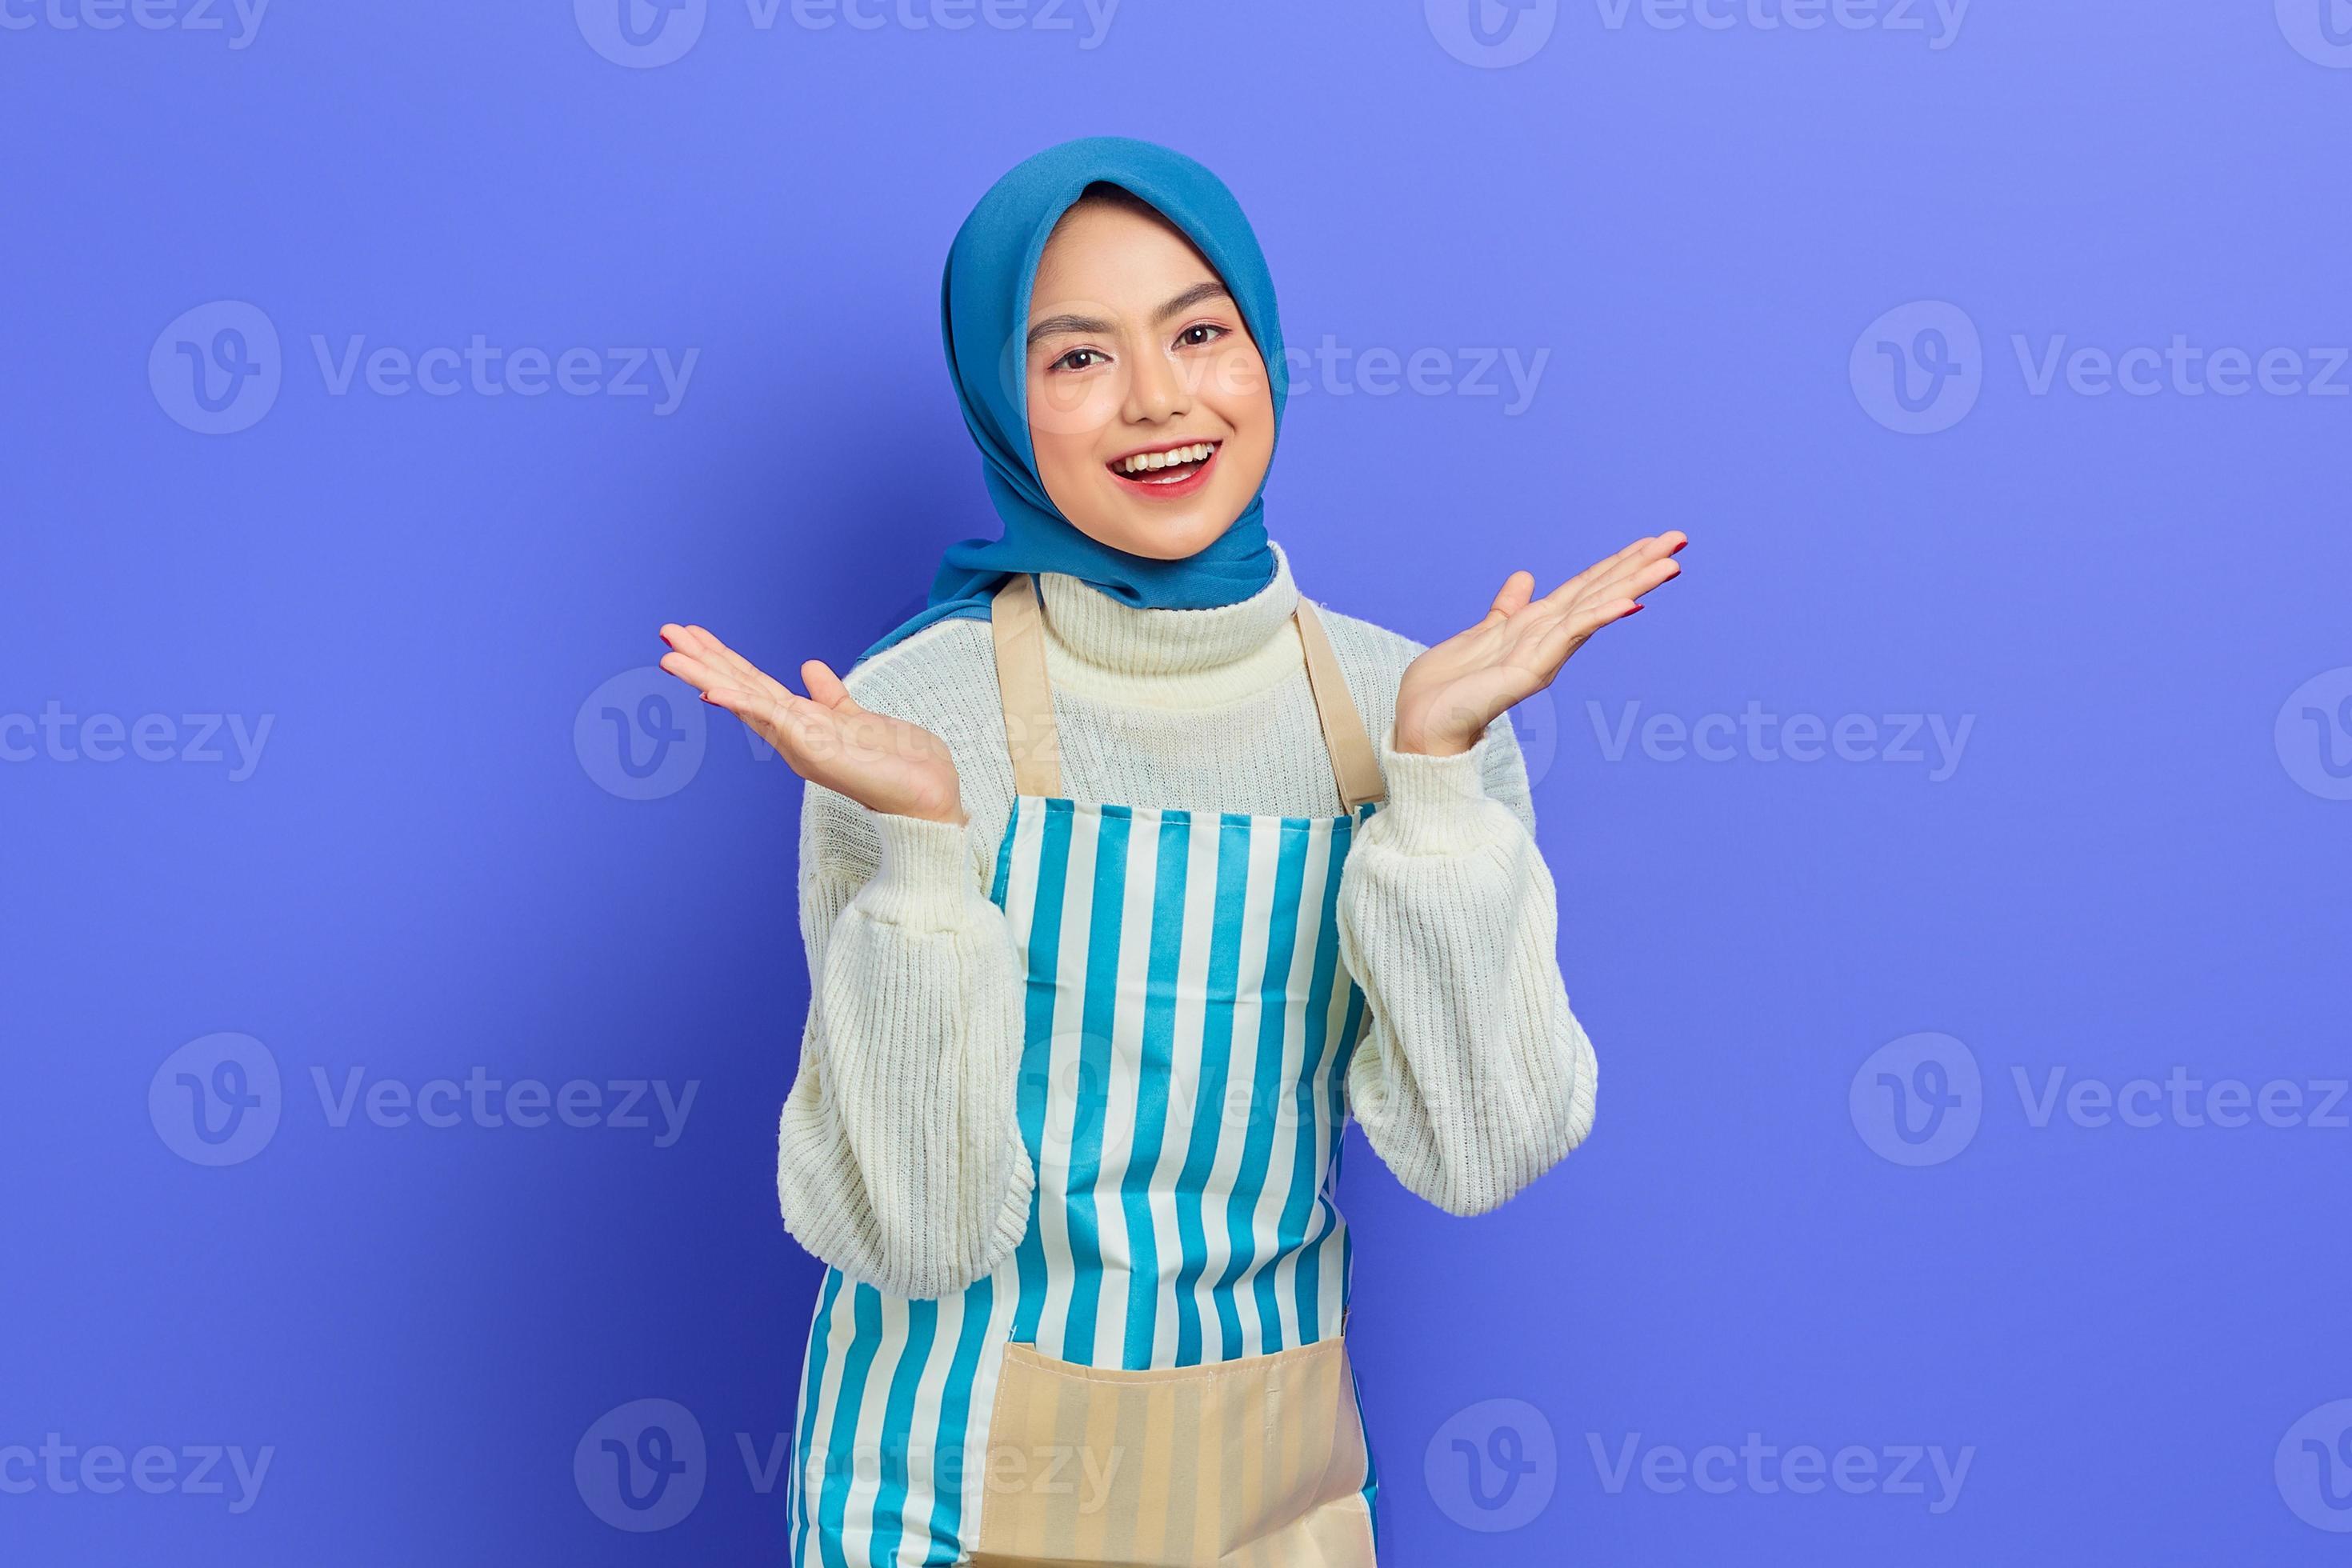 allegra giovane donna musulmana asiatica che indossa hijab e grembiule, celebrando il successo e ottenendo buone notizie isolate su sfondo viola. concetto di stile di vita musulmano casalinga di persone foto